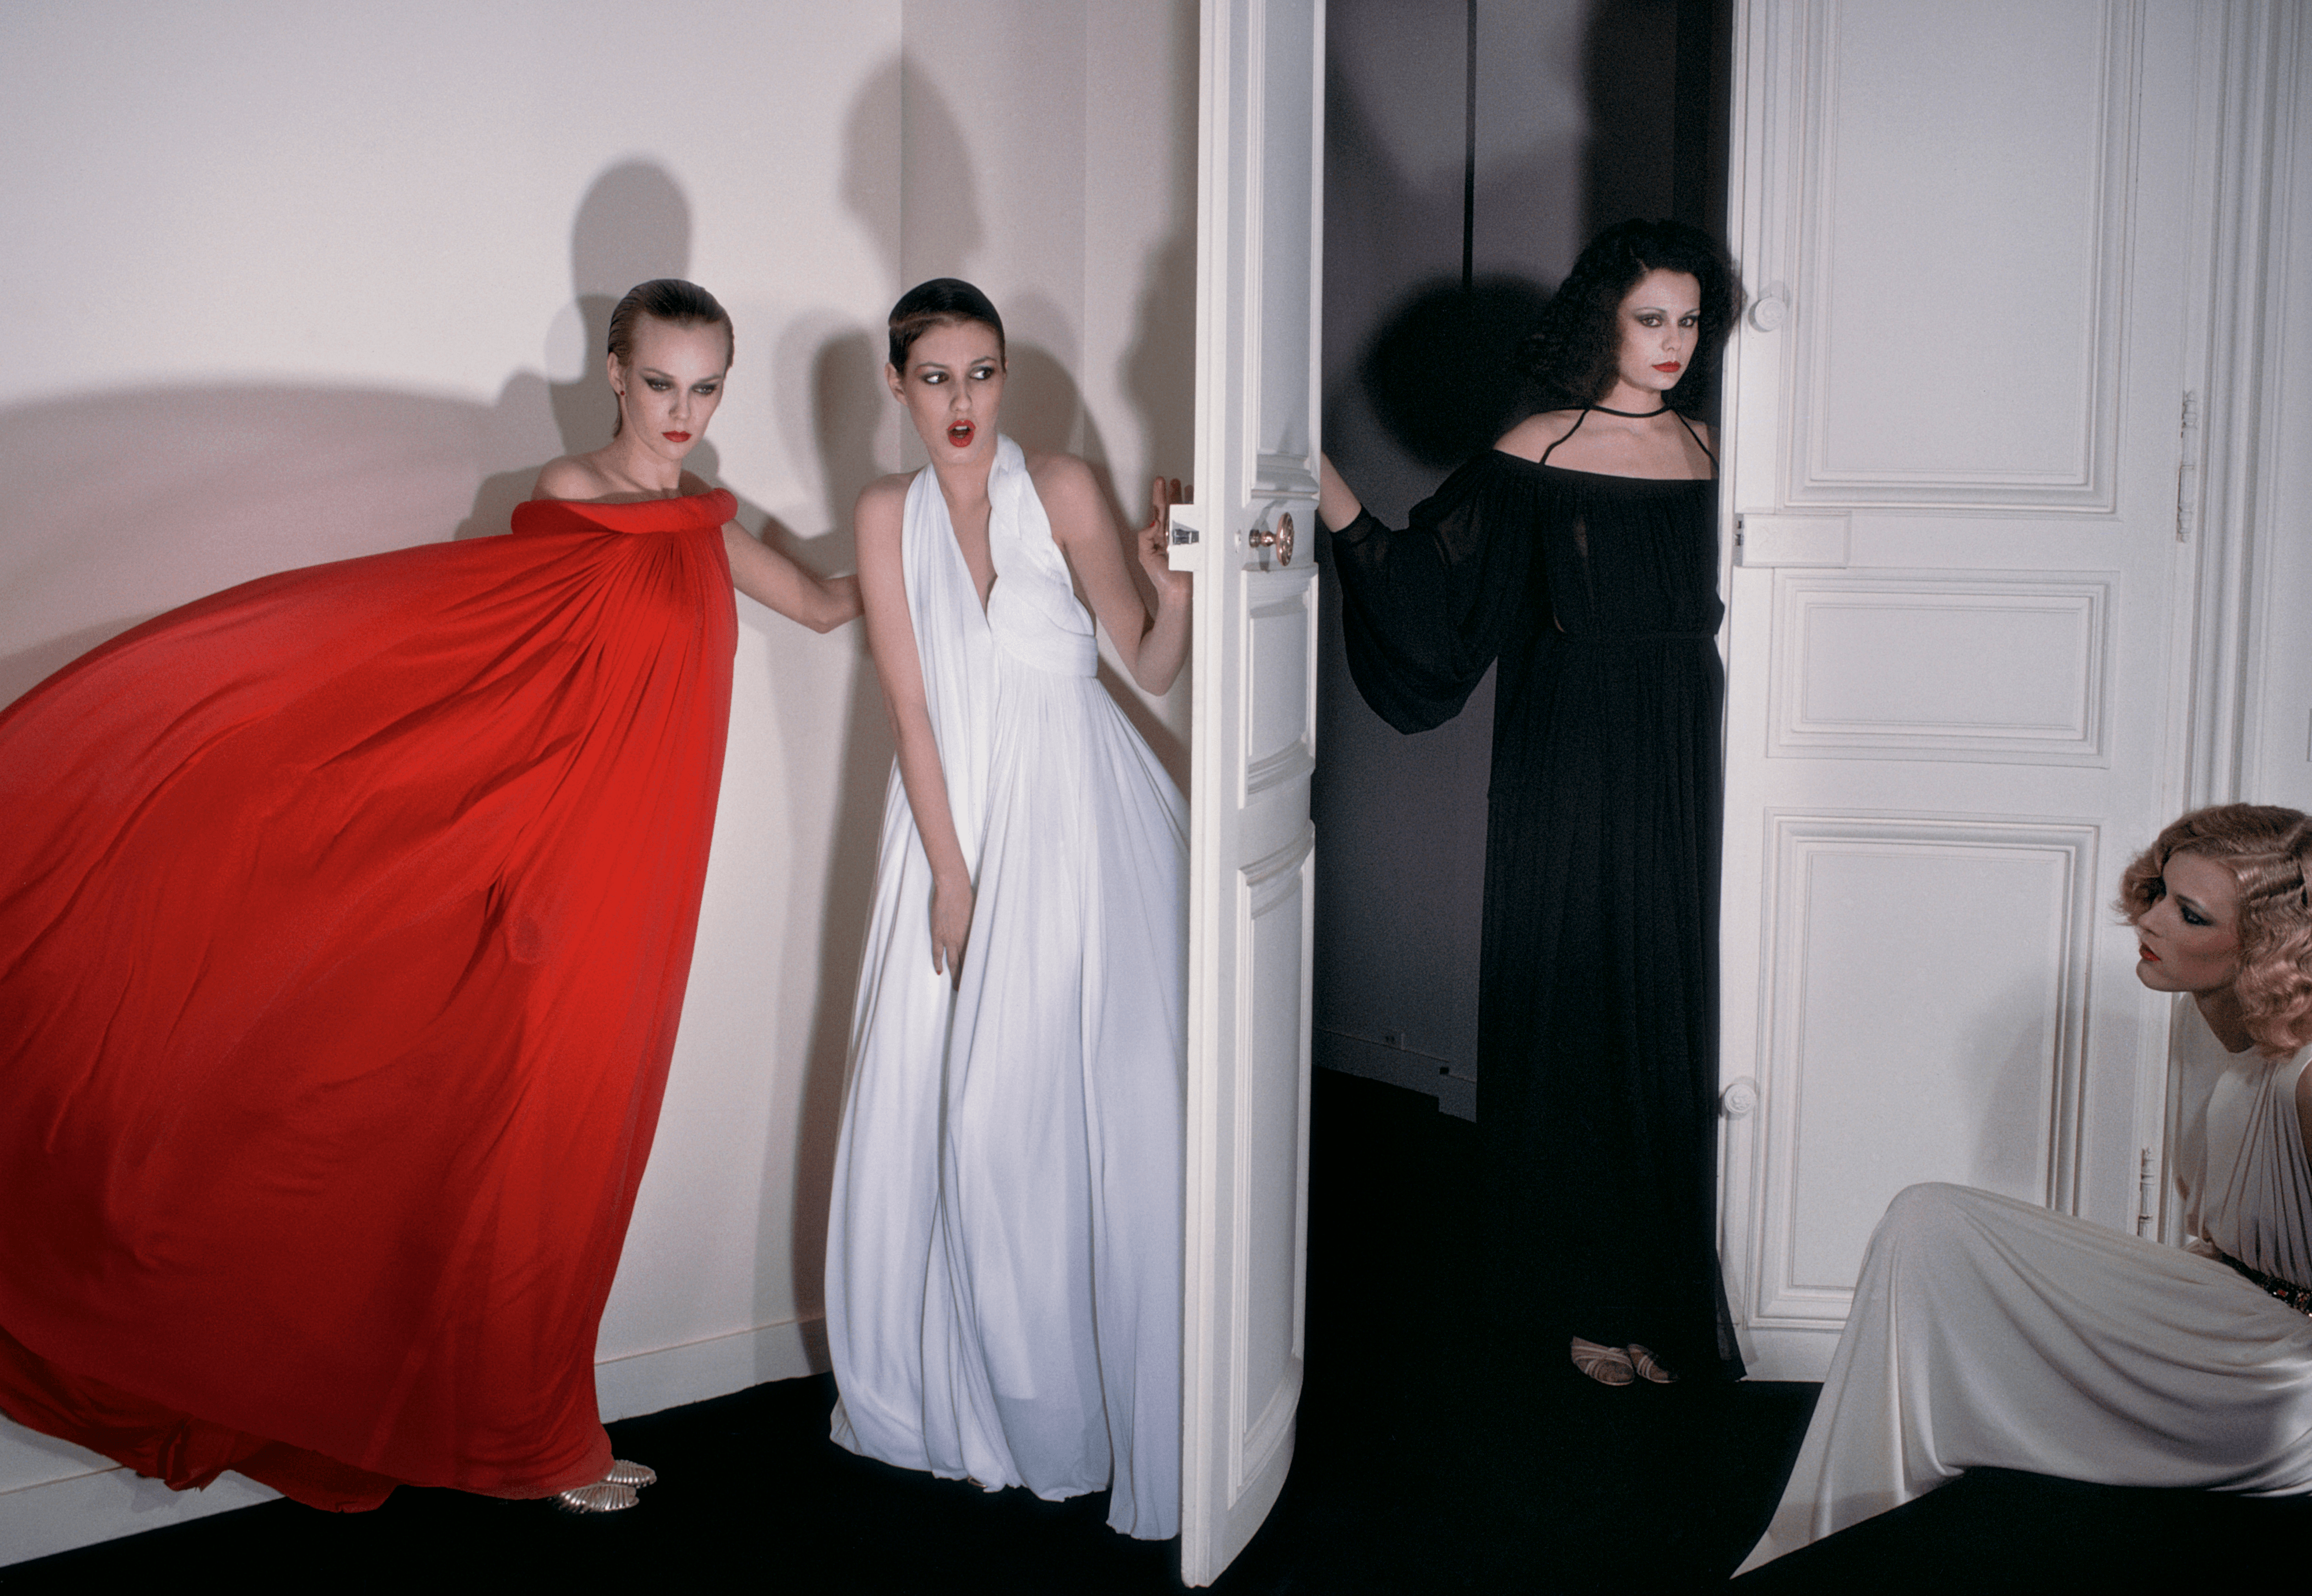 Vogue Paris, March 1976